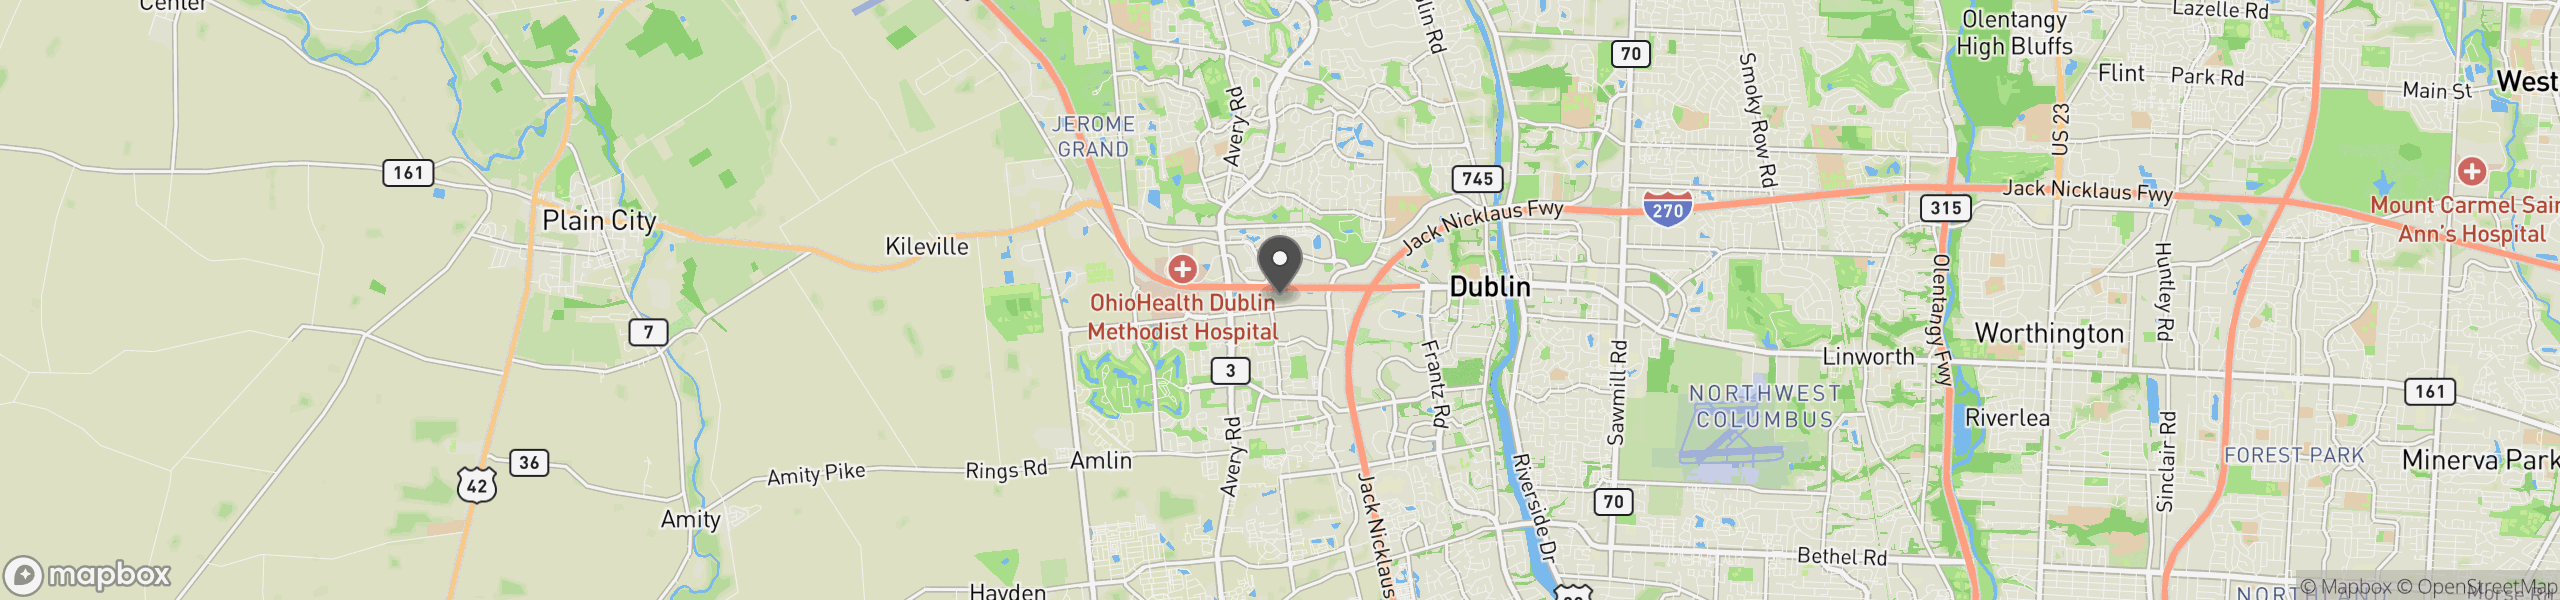 Dublin, OH 43016